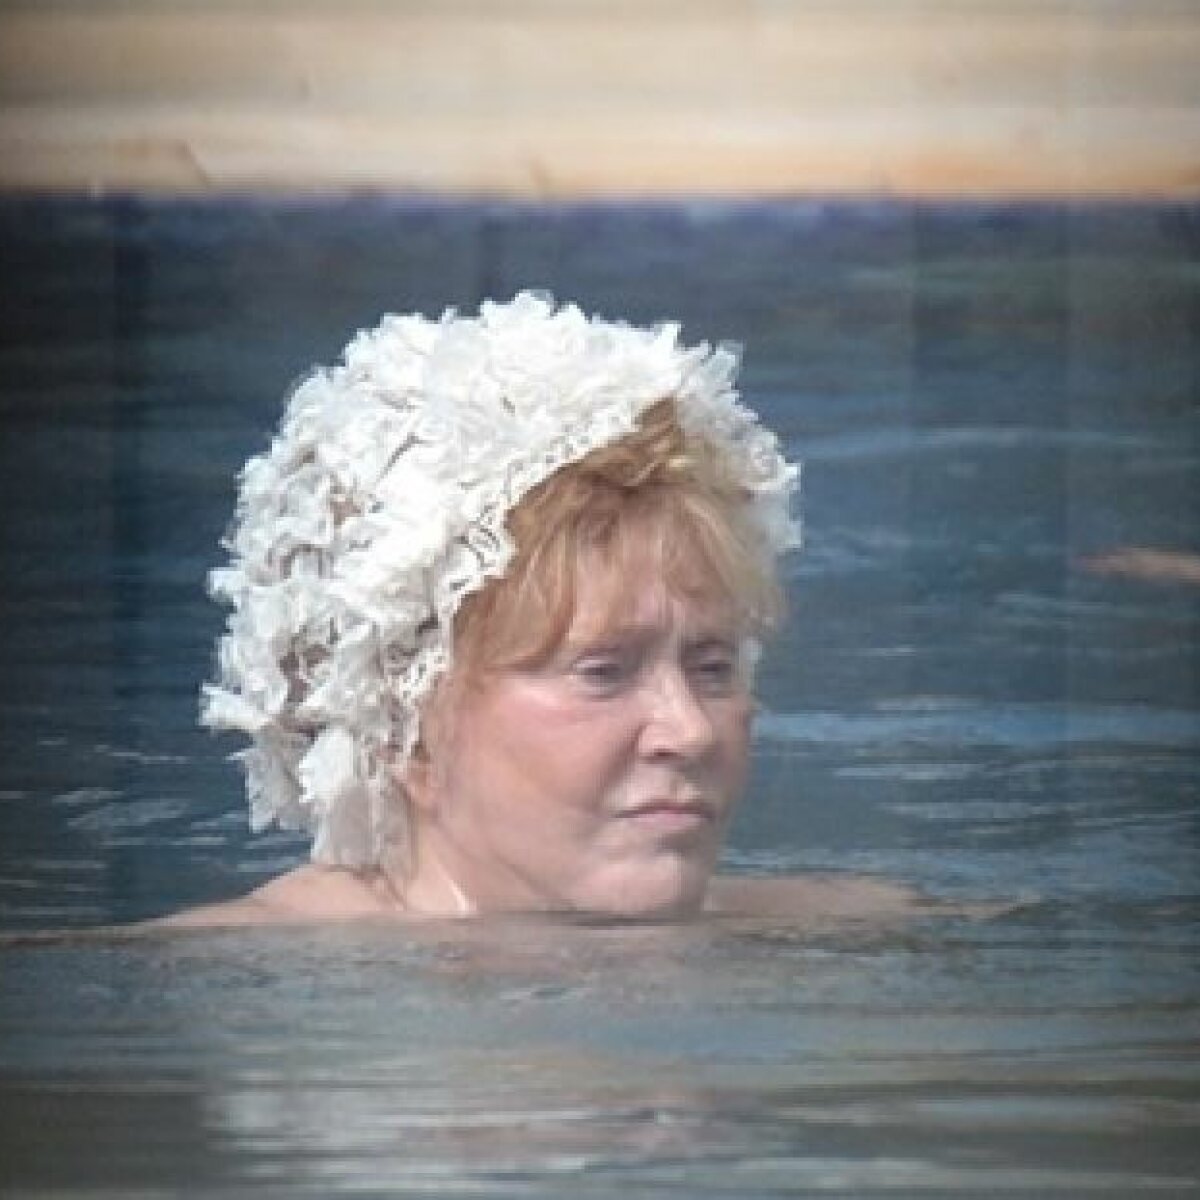 Долина продемонстрировала фото в купальнике, Пугачева - морщины | Новини на сайті биржевые-записки.рф